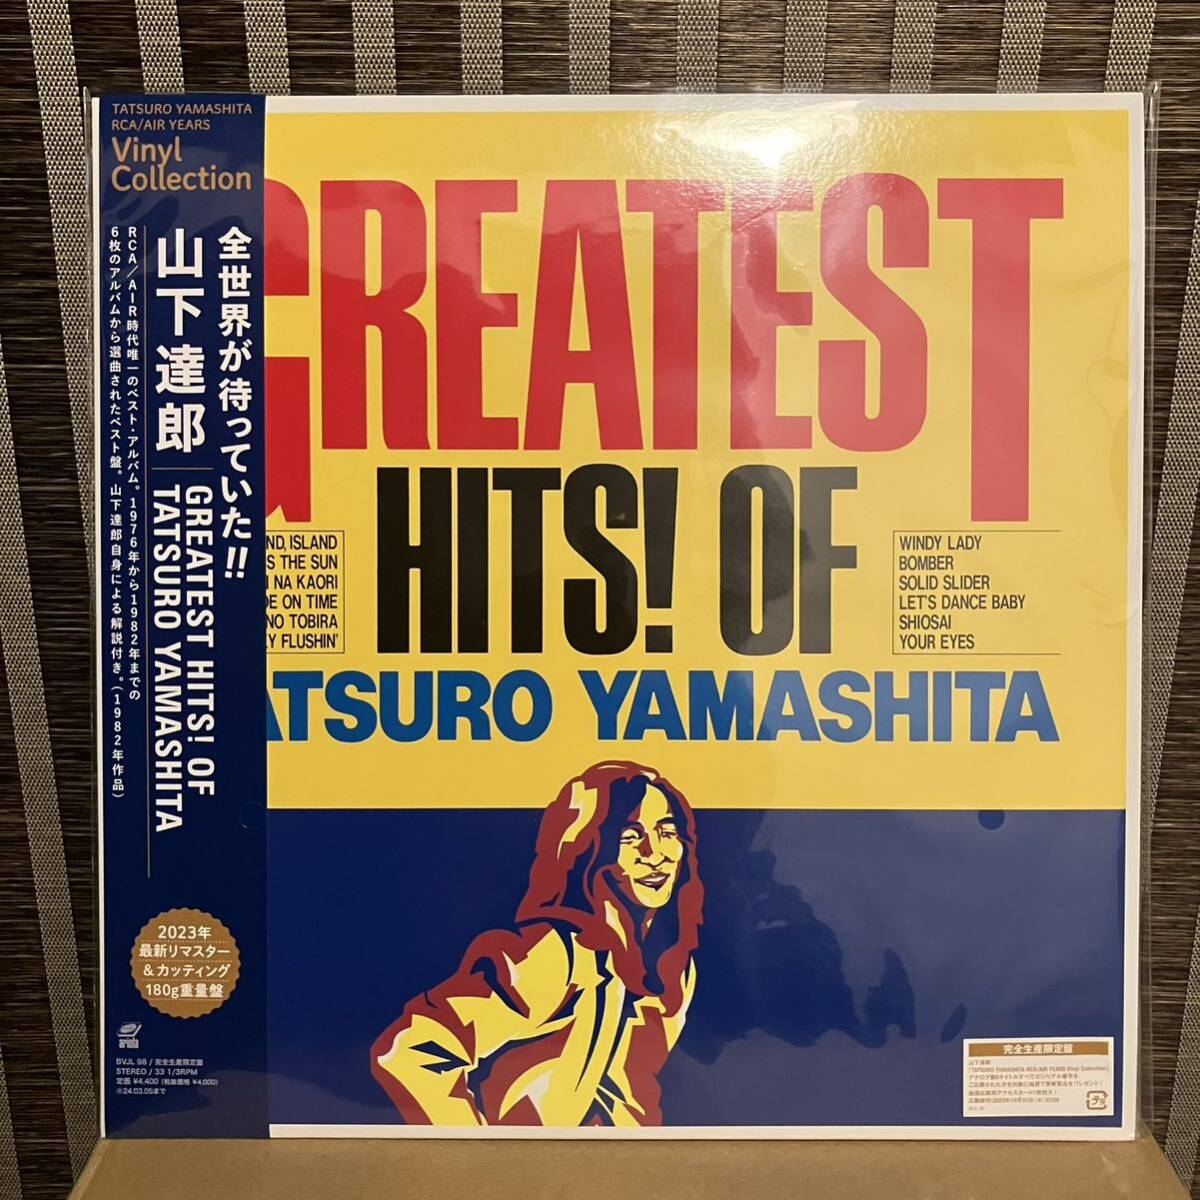 【8枚セット】山下達郎 アナログ レコード LP 180g重量盤 完全生産限定盤 特典付き